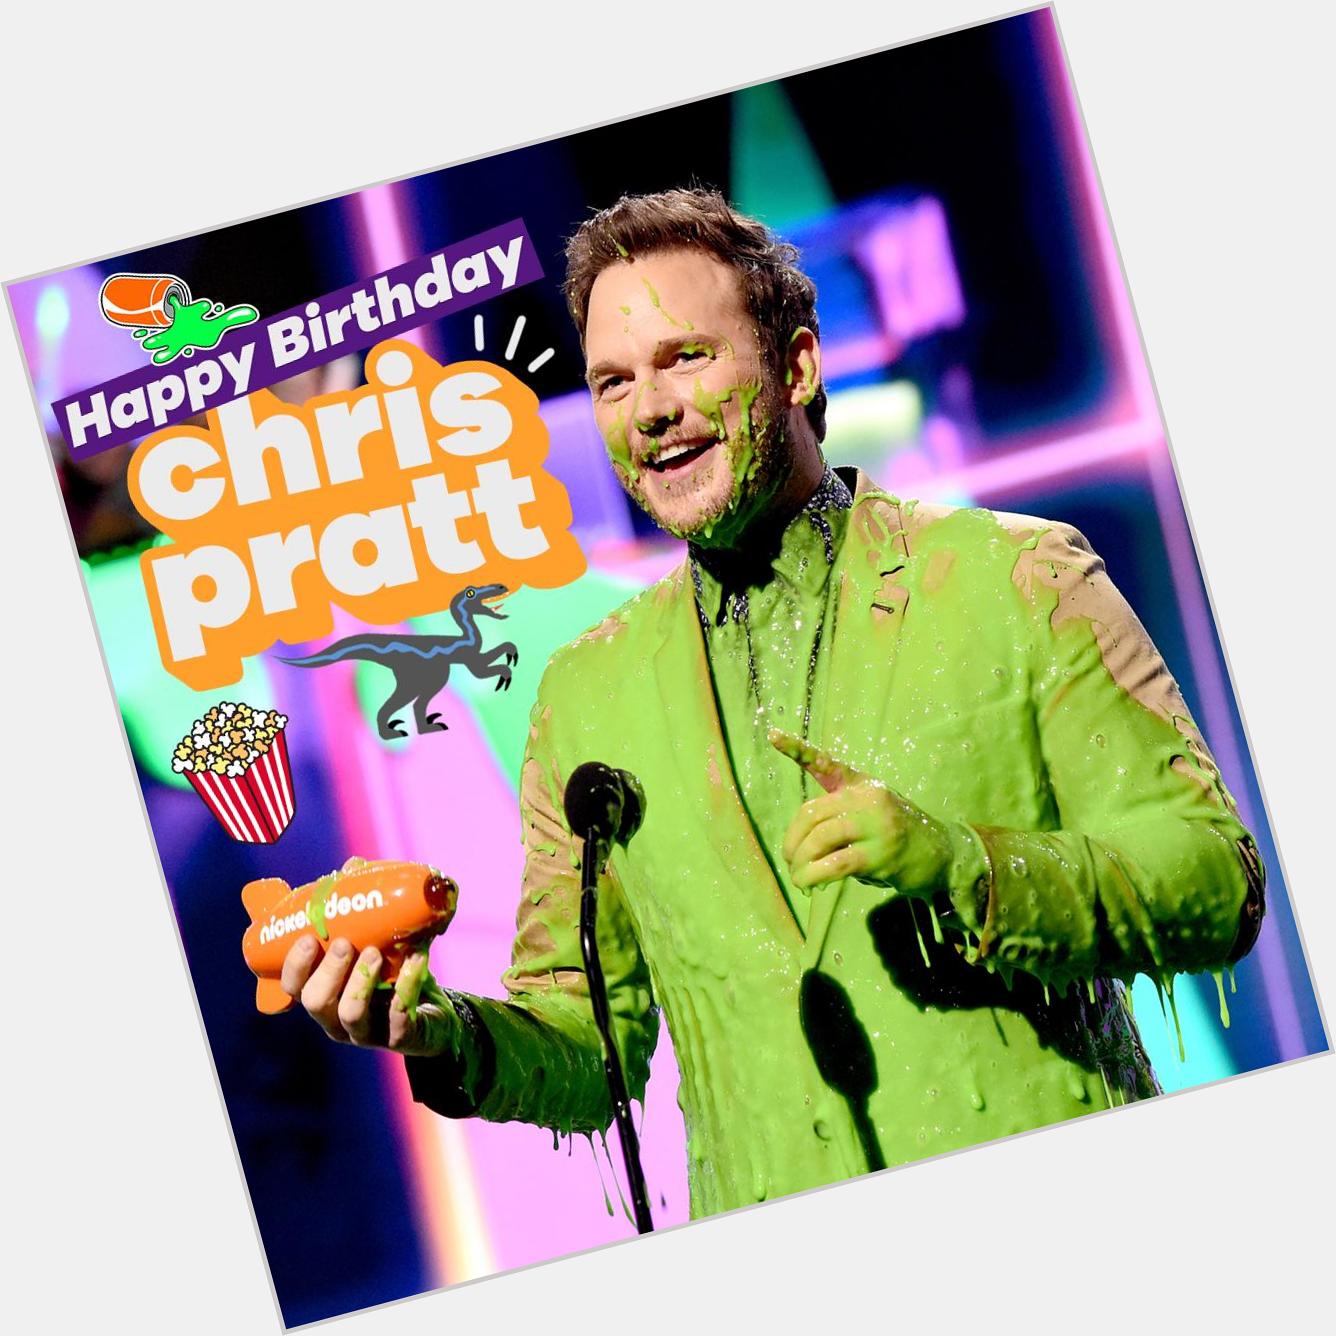 Happy birthday to the legendary Chris Pratt   